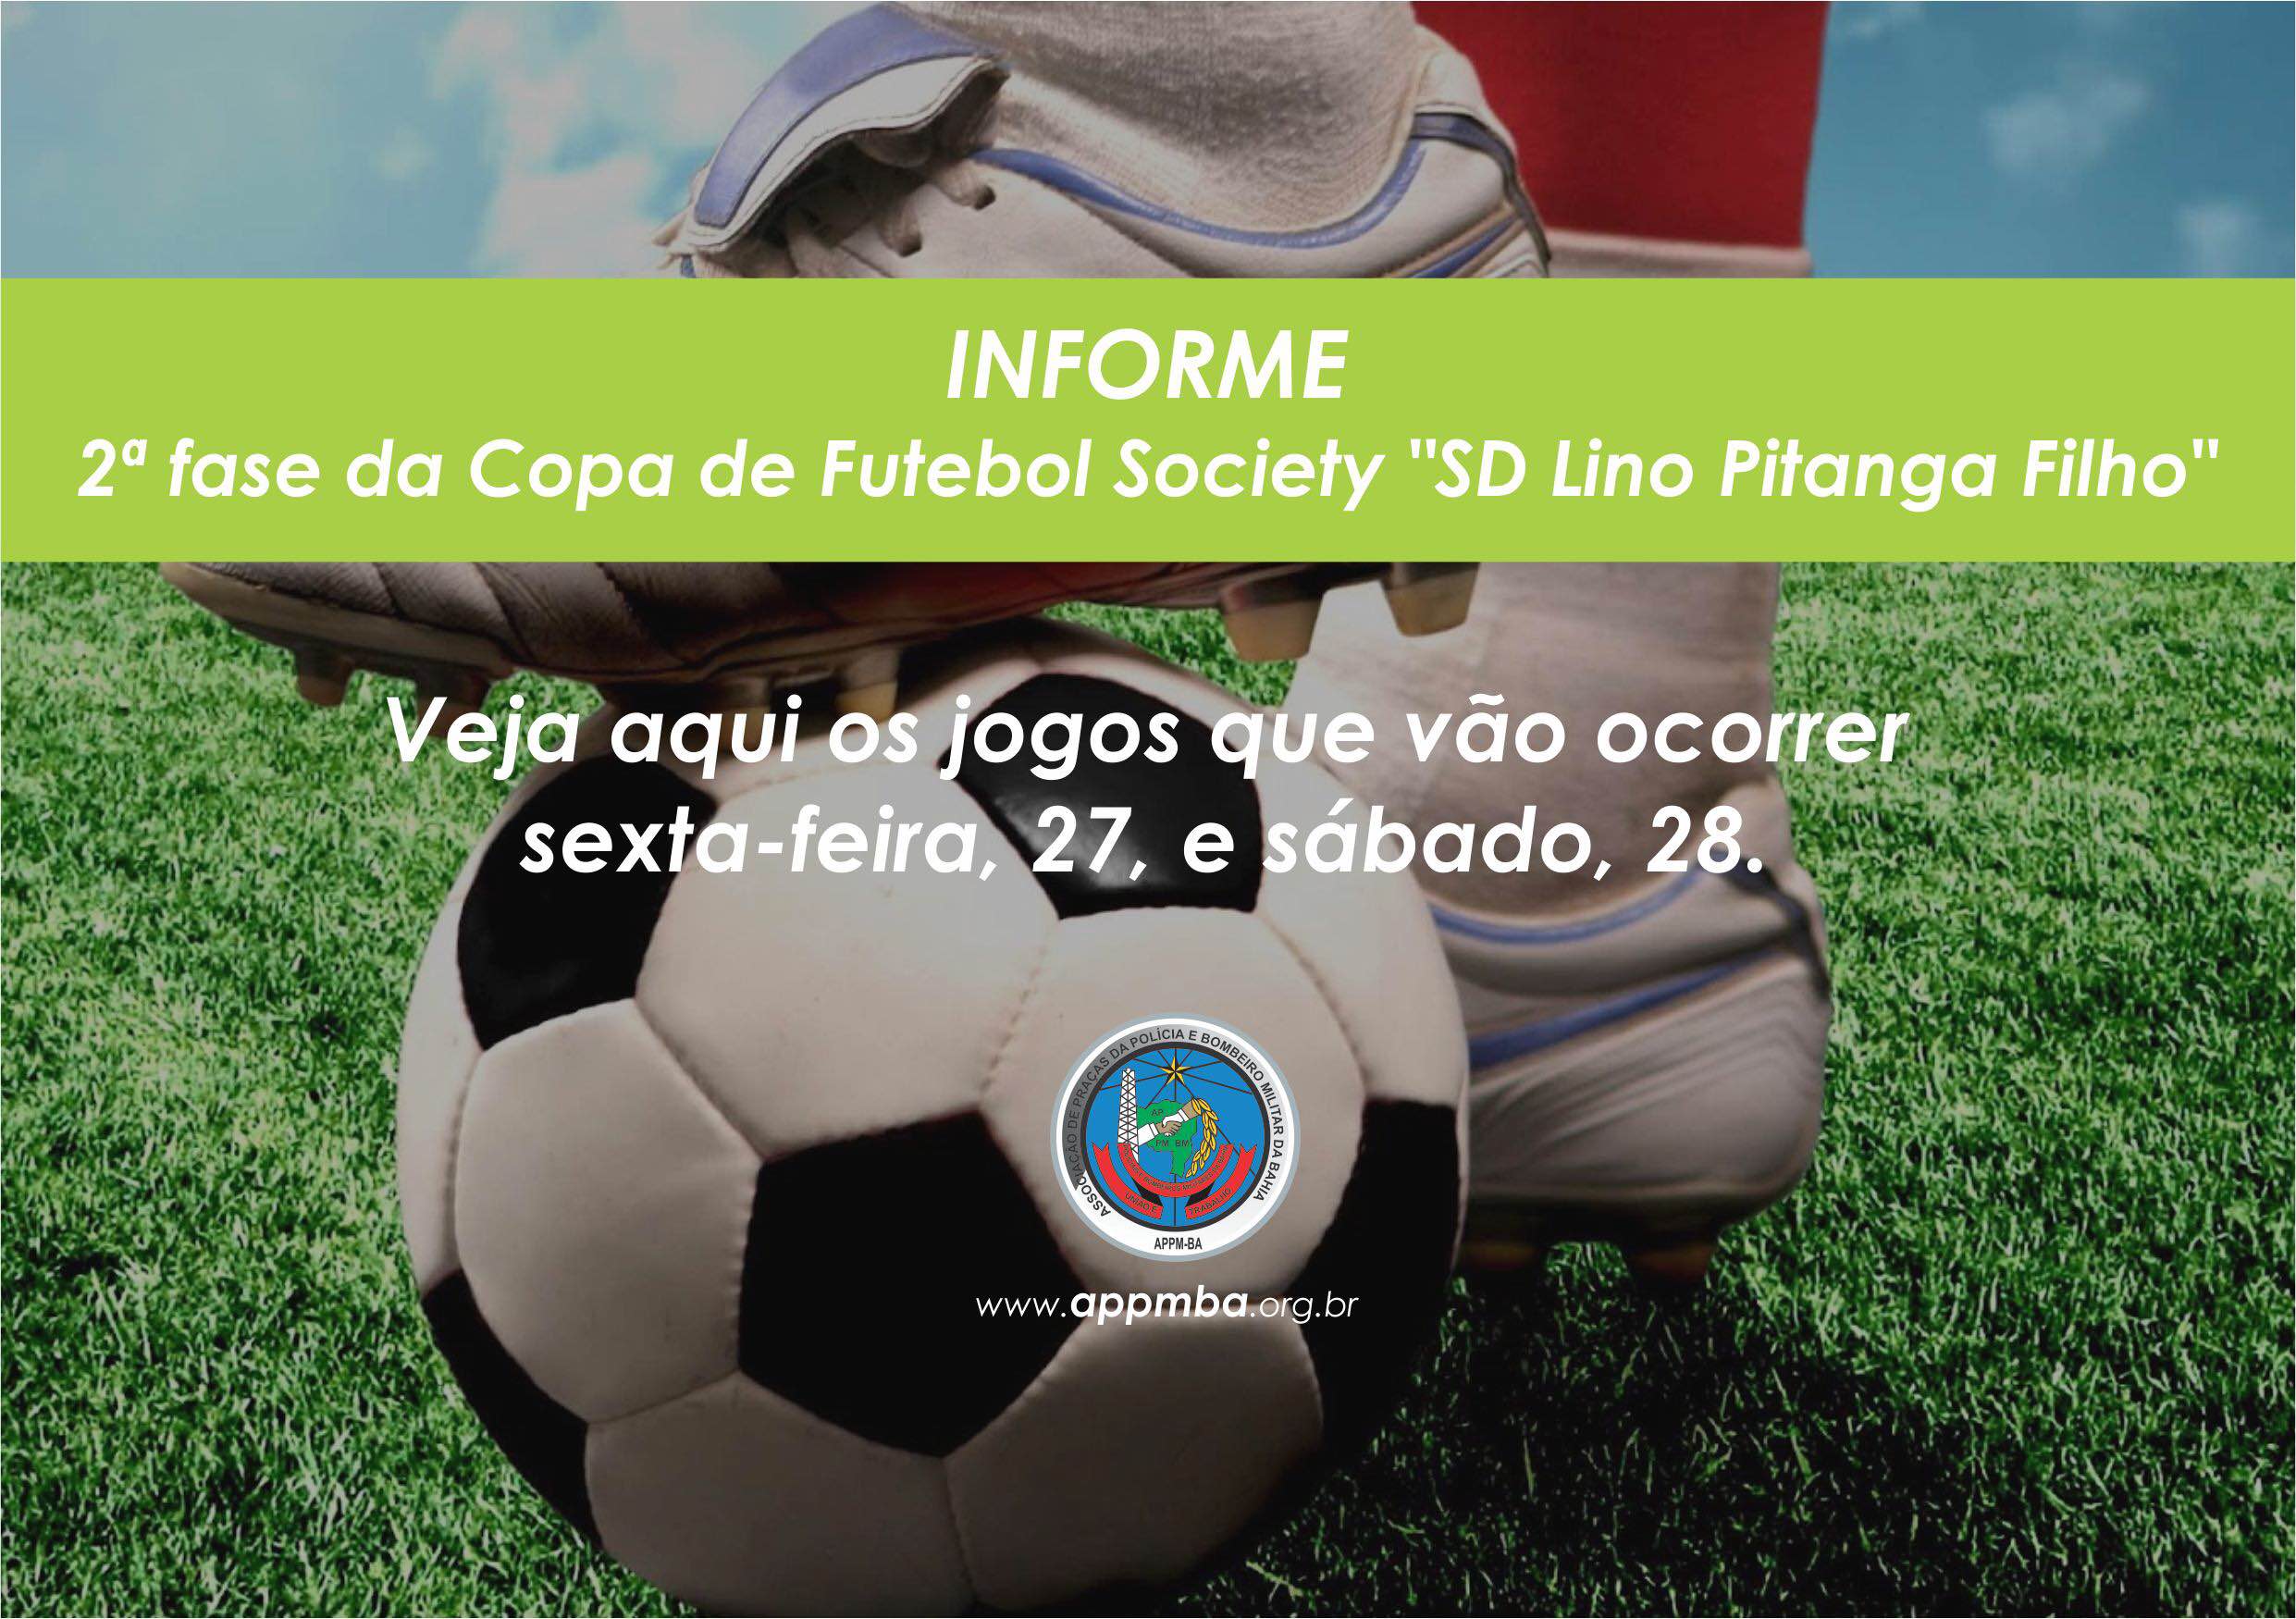 Jogos que vão ocorrer nos dias 27 e 28/1 pela 2ª fase da Copa SD Lino Pitanga Filho